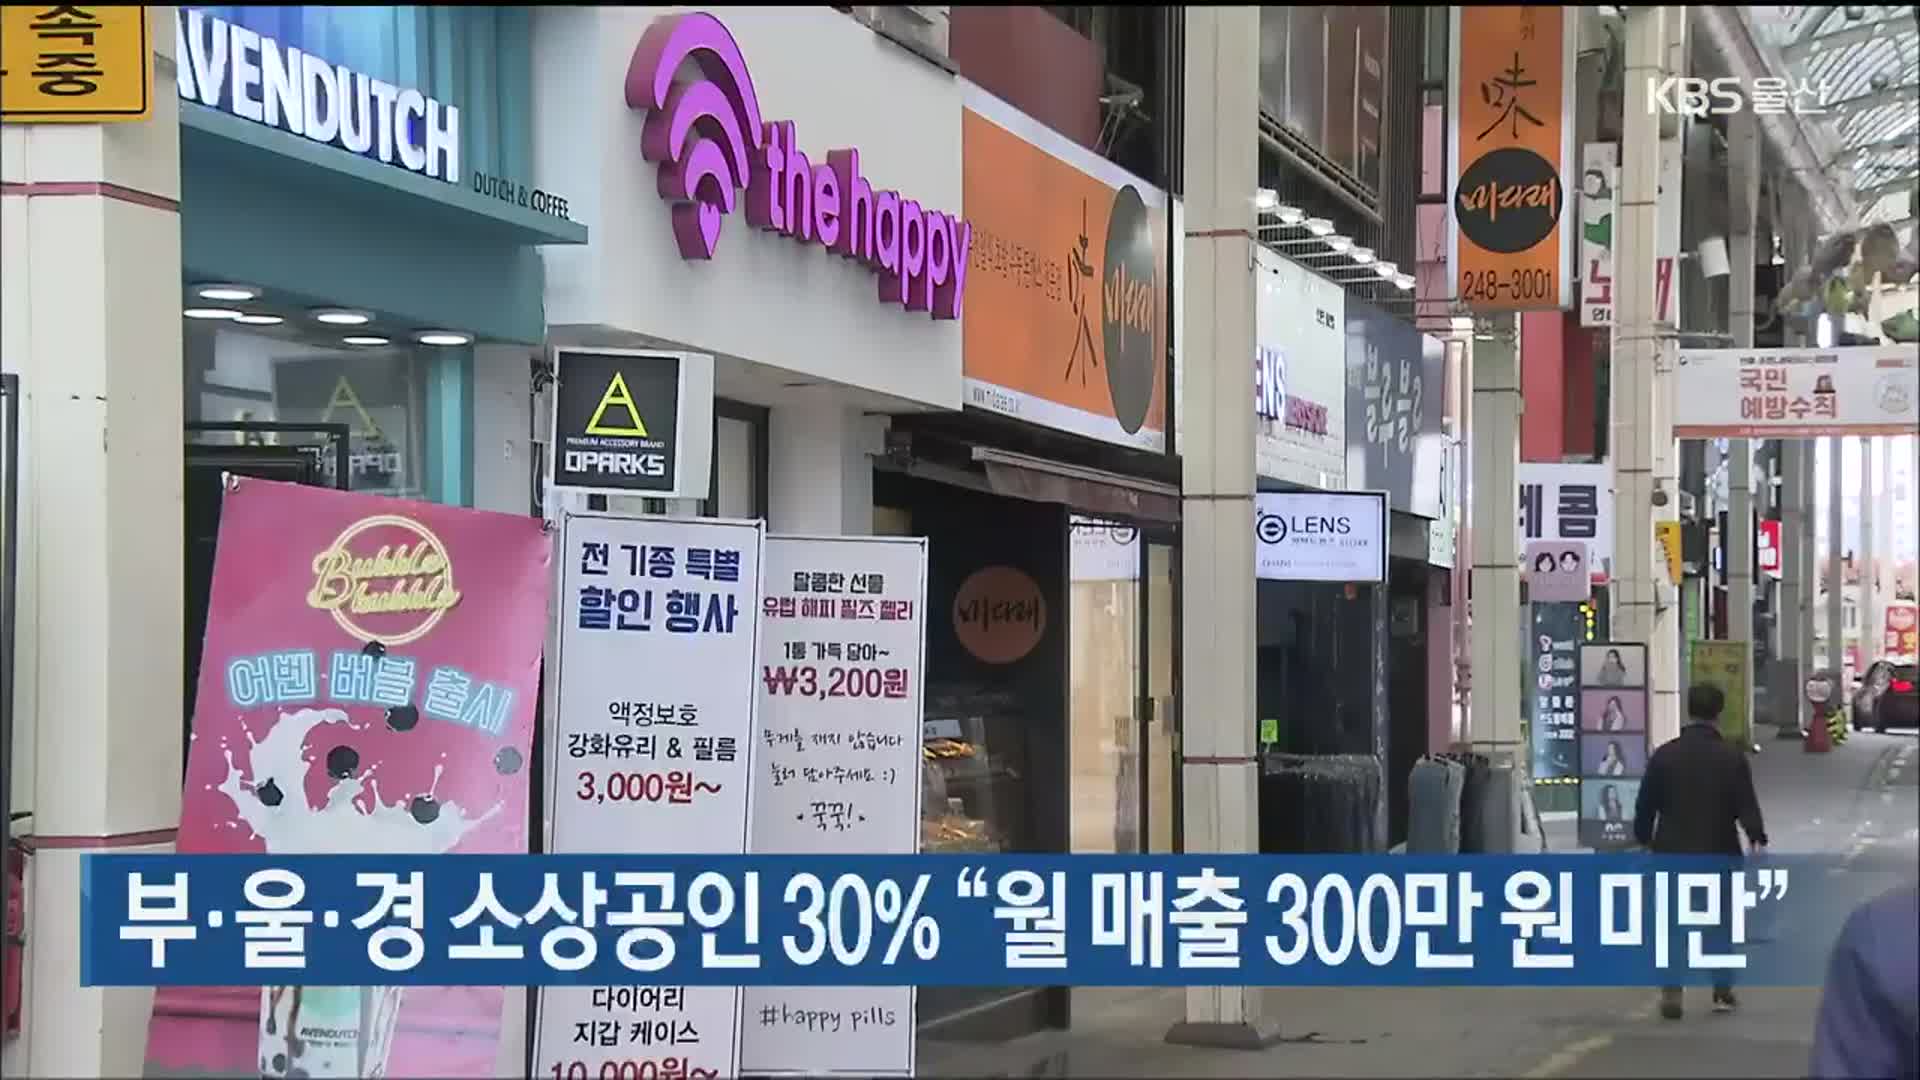 부·울·경 소상공인 30% “월 매출 300만 원 미만”